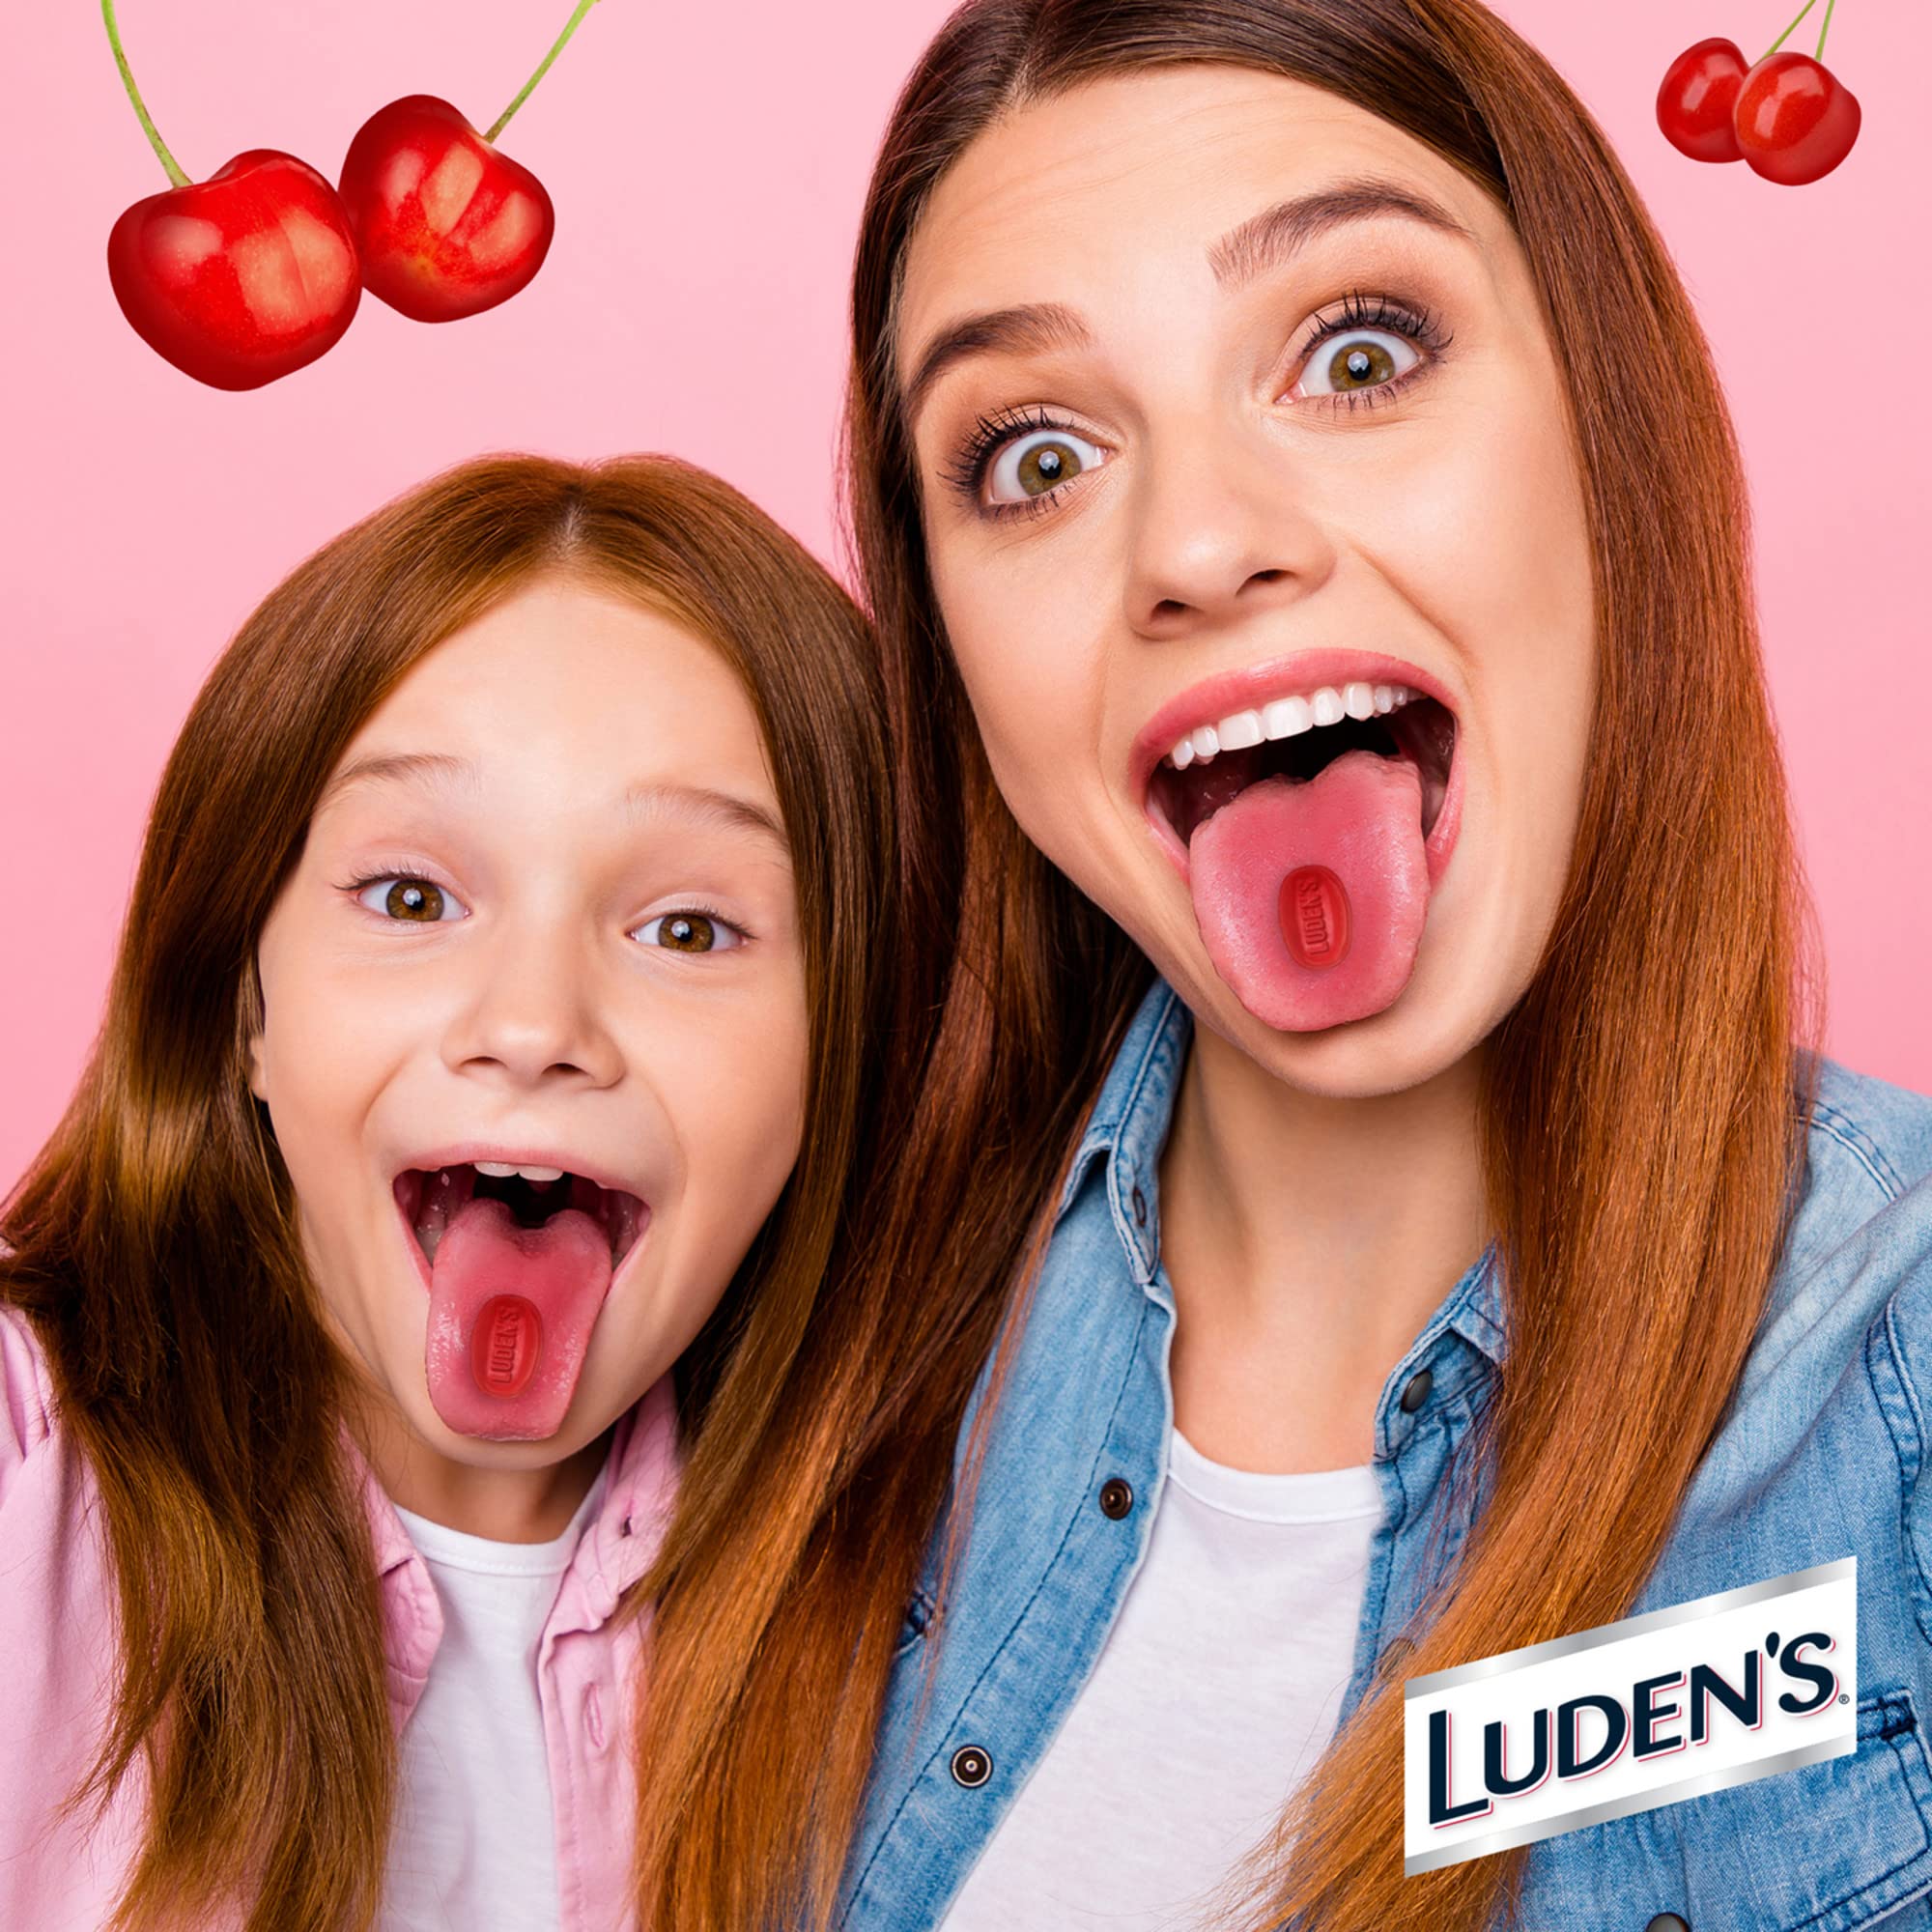 Luden's Wild Cherry Throat Drops, Sore Throat Relief, 30 Count